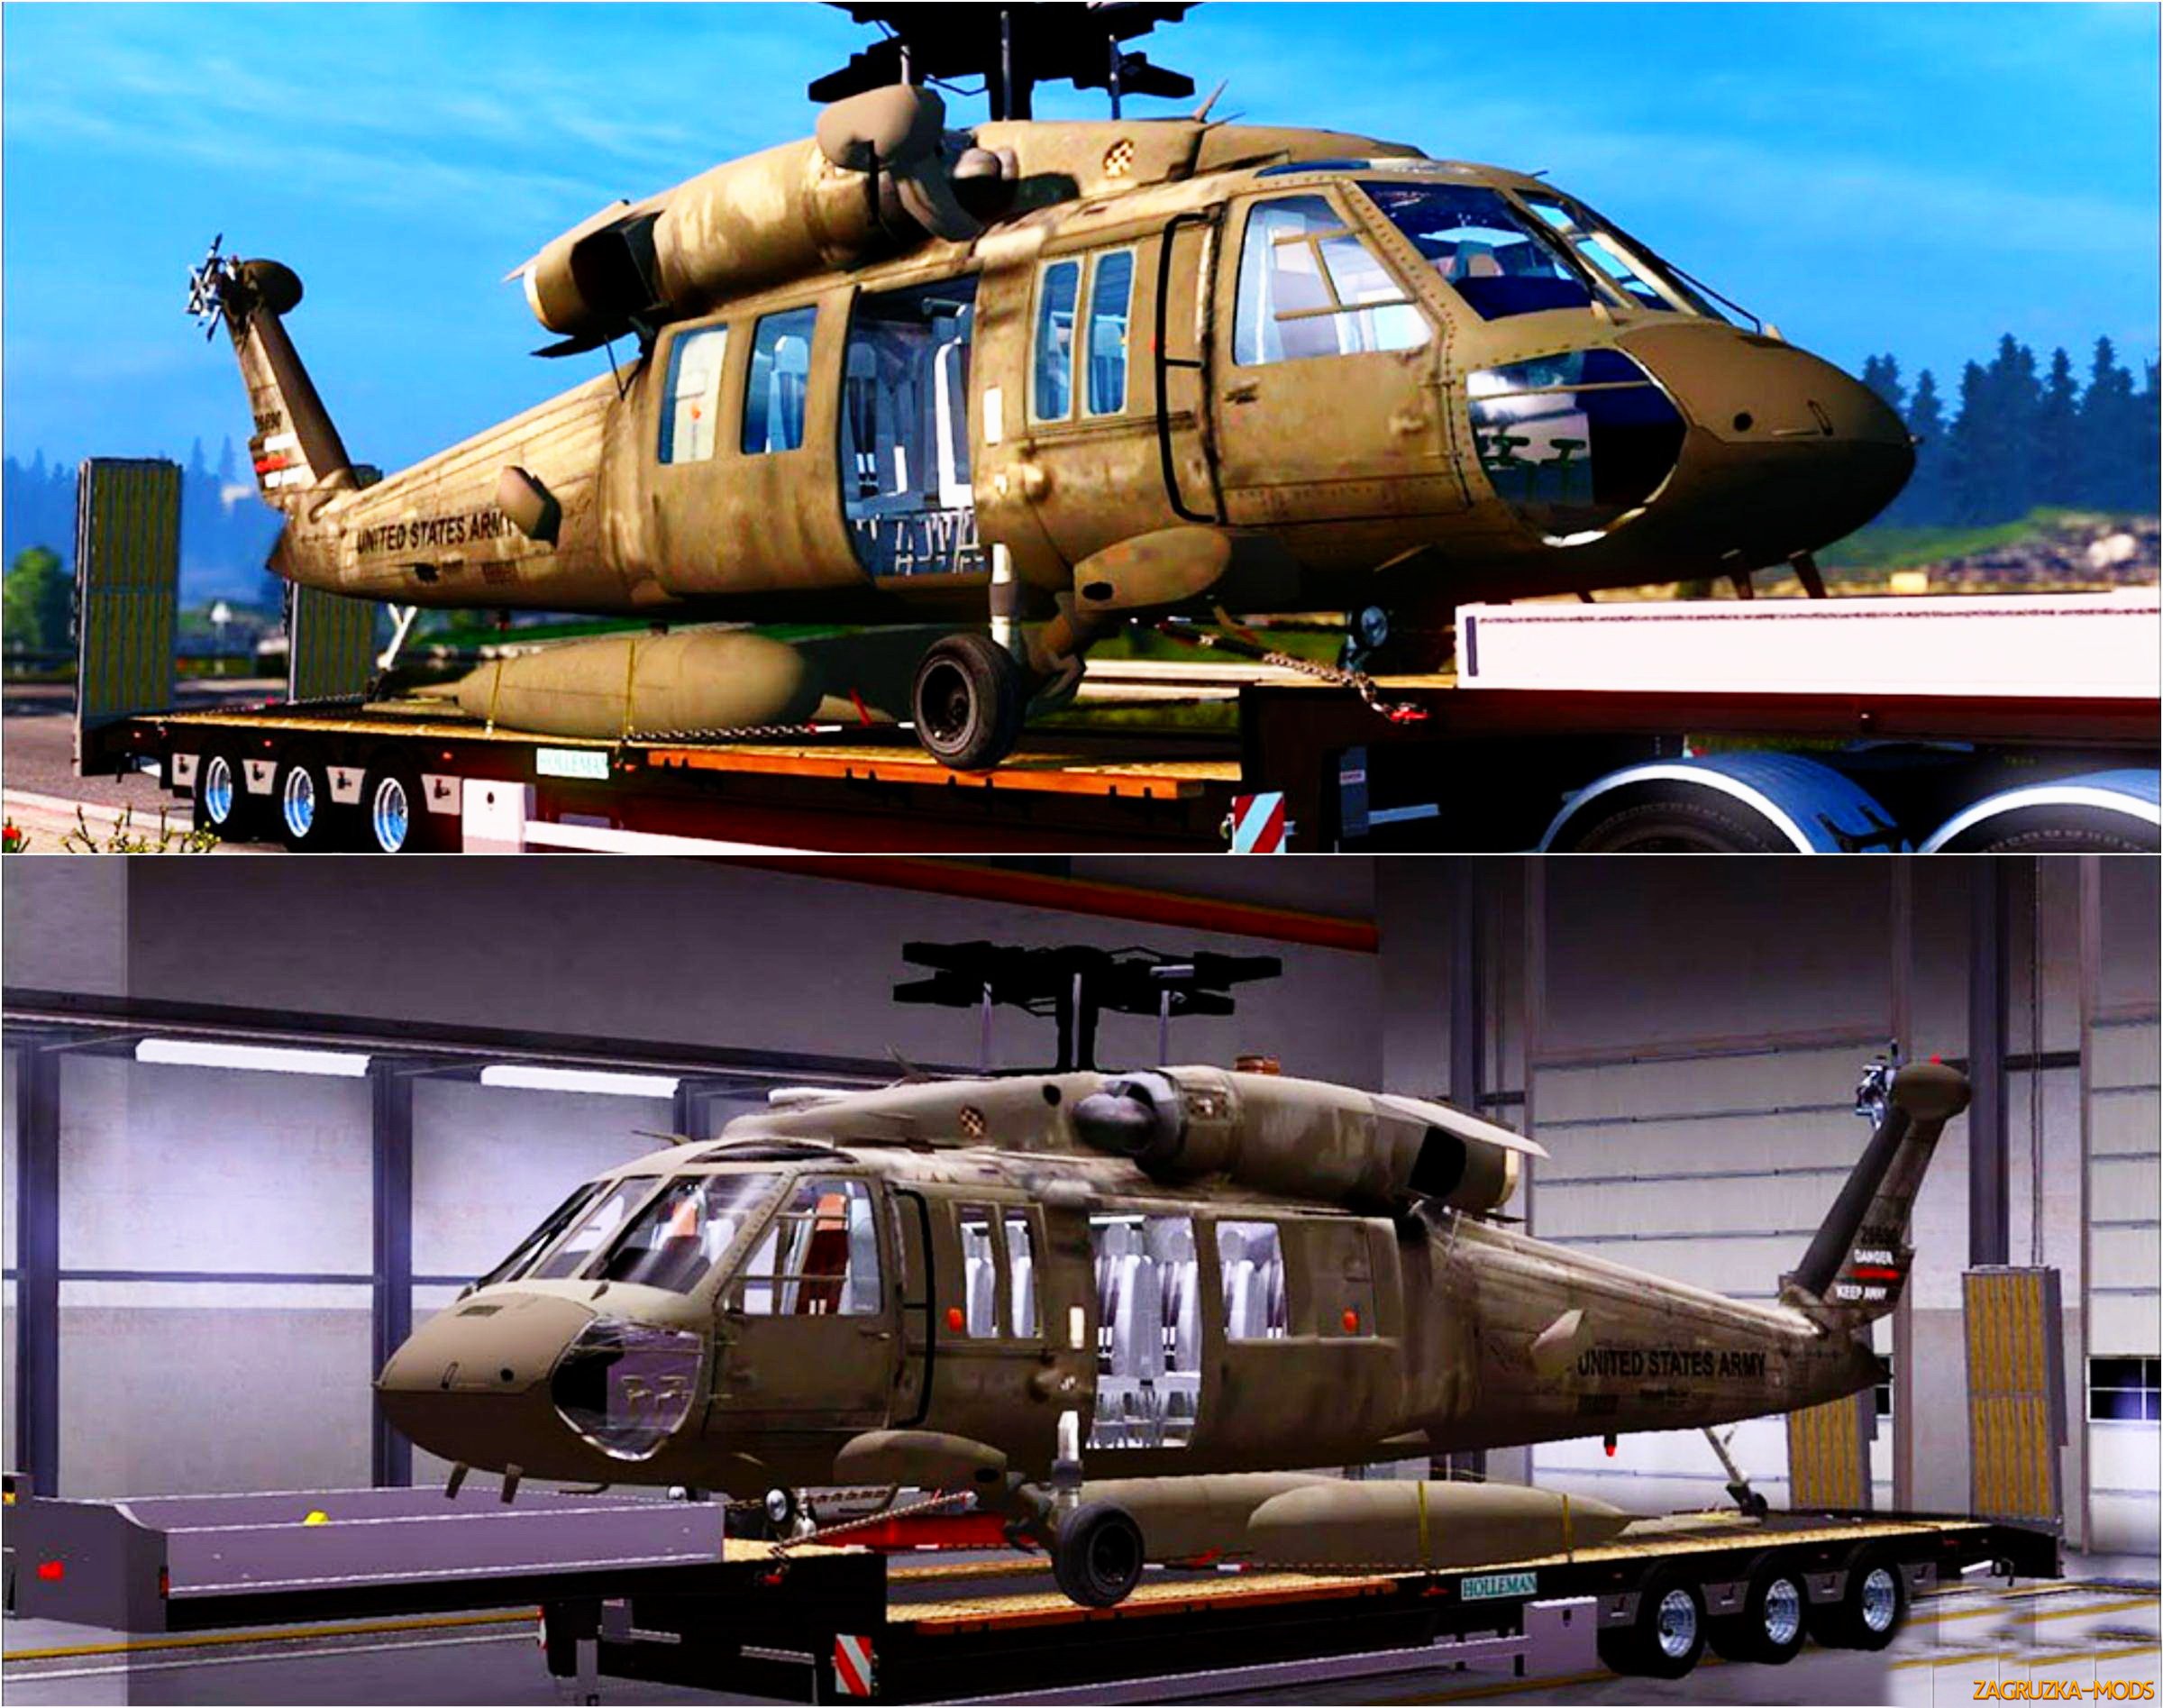 Trailer UH-60 Black Hawk v3.0 for ETS 2